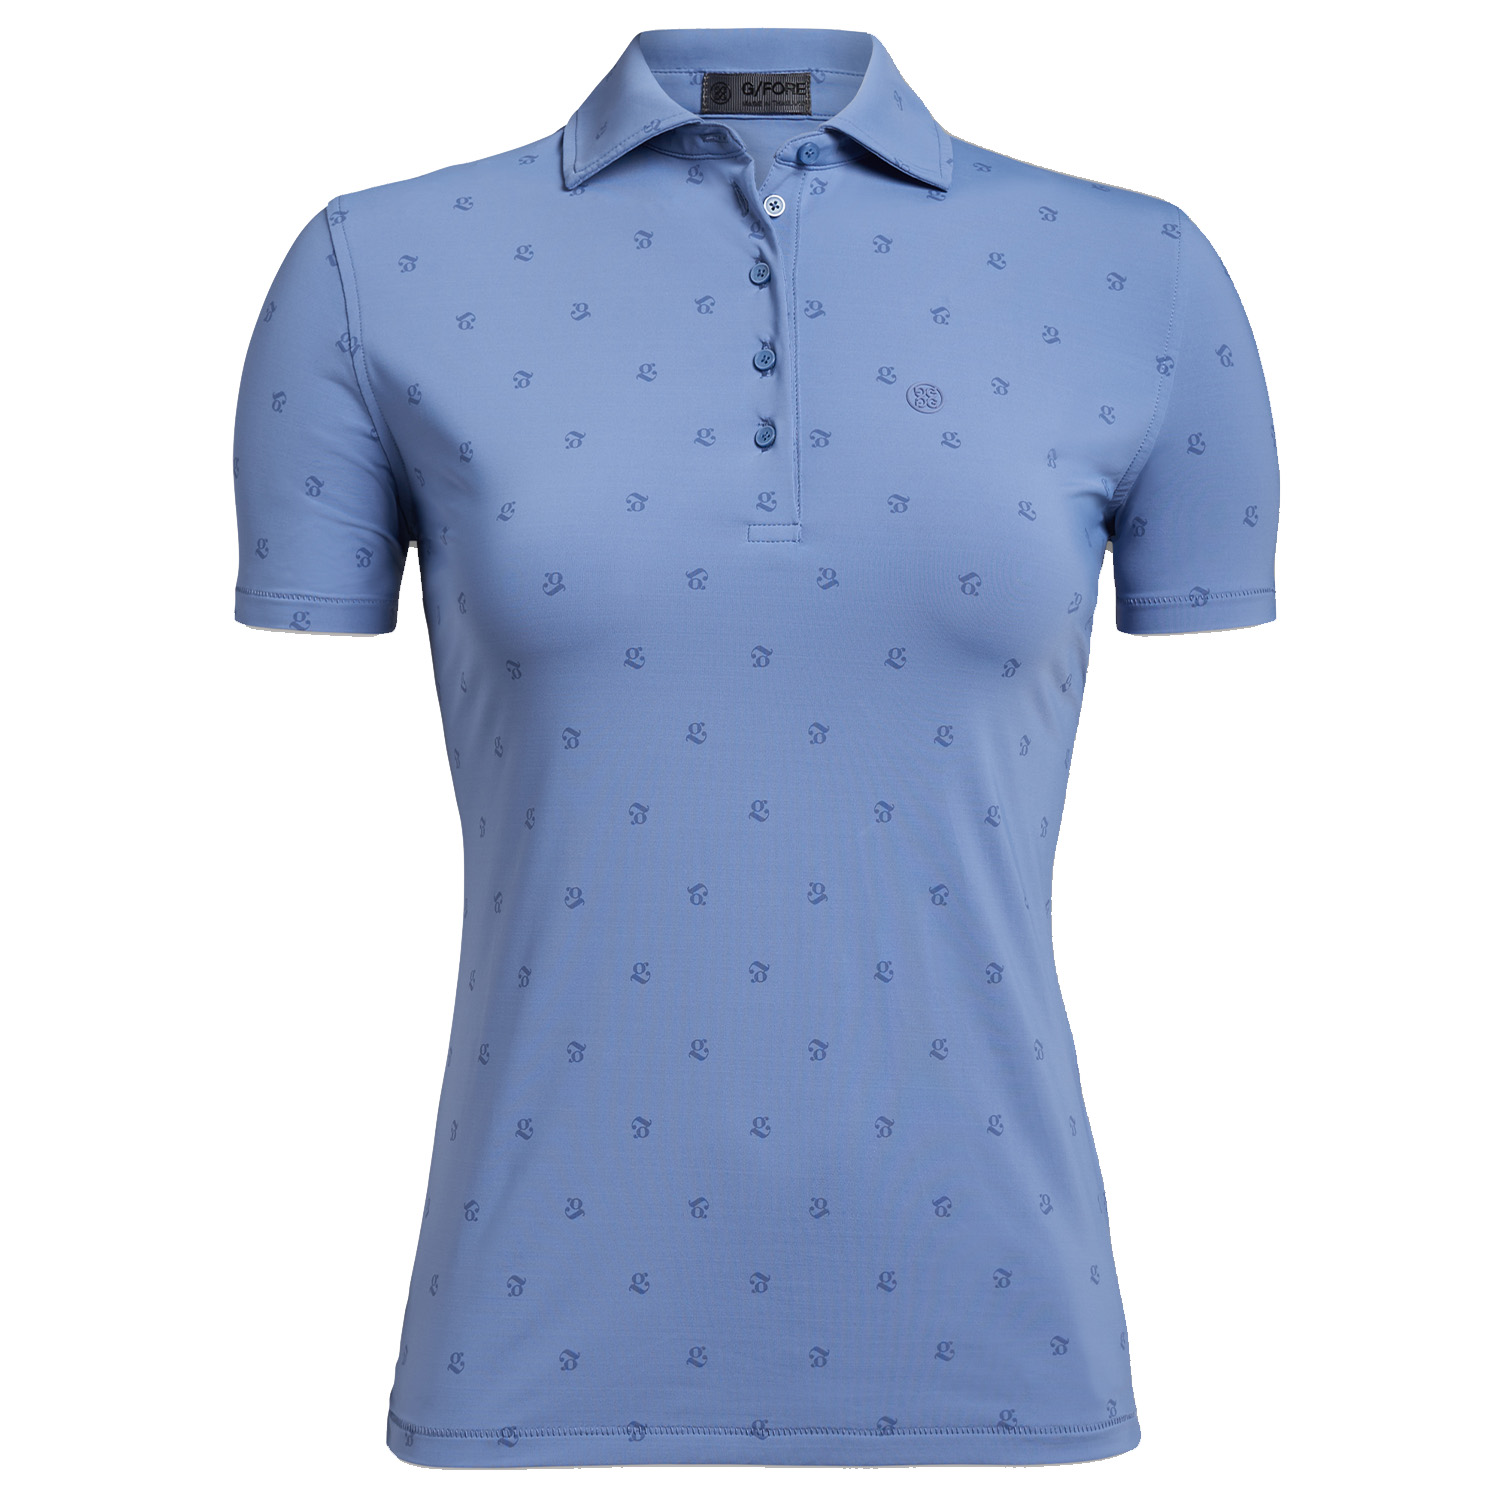 G/FORE Mini G's Silky Tech Ladies Golf Polo Shirt